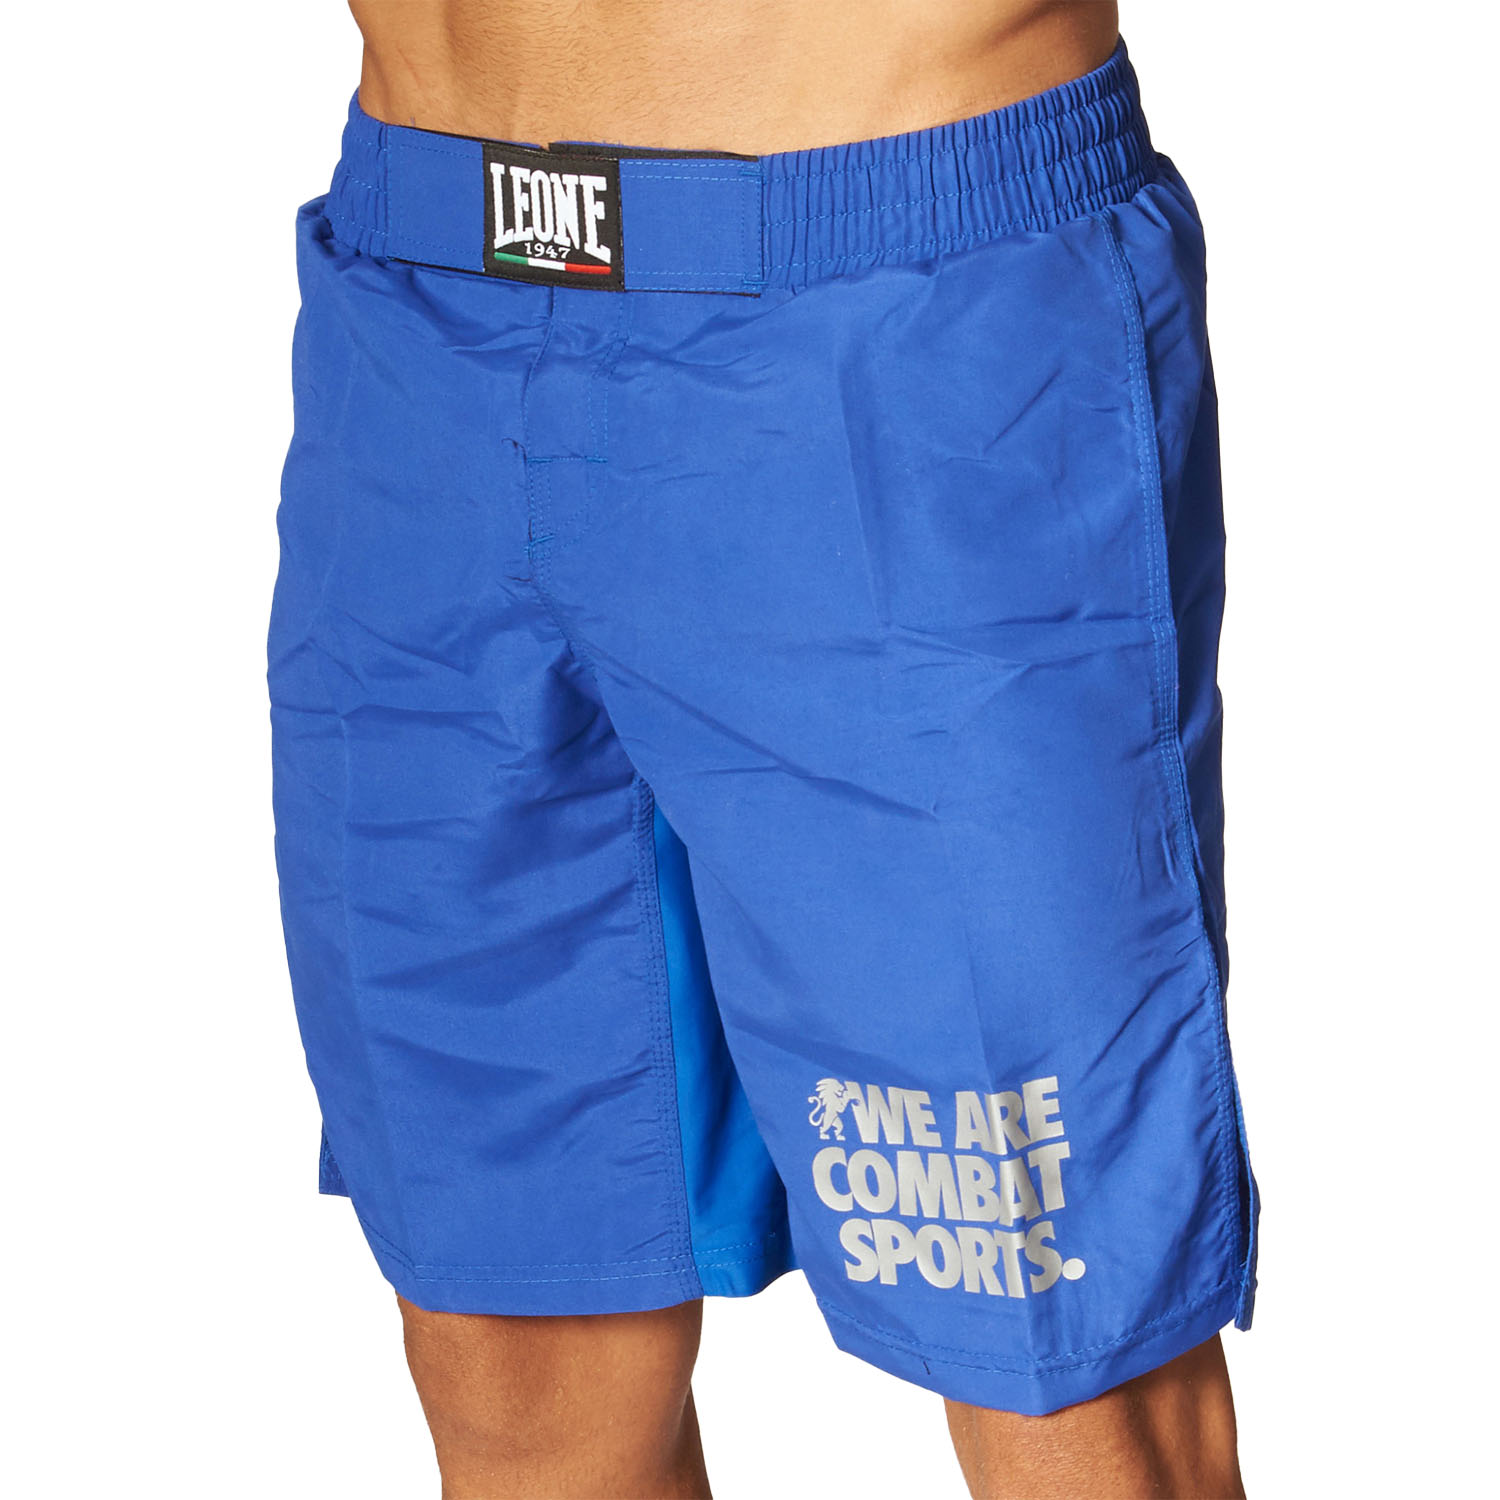 LEONE MMA Fight Shorts, Basic, AB795, blau